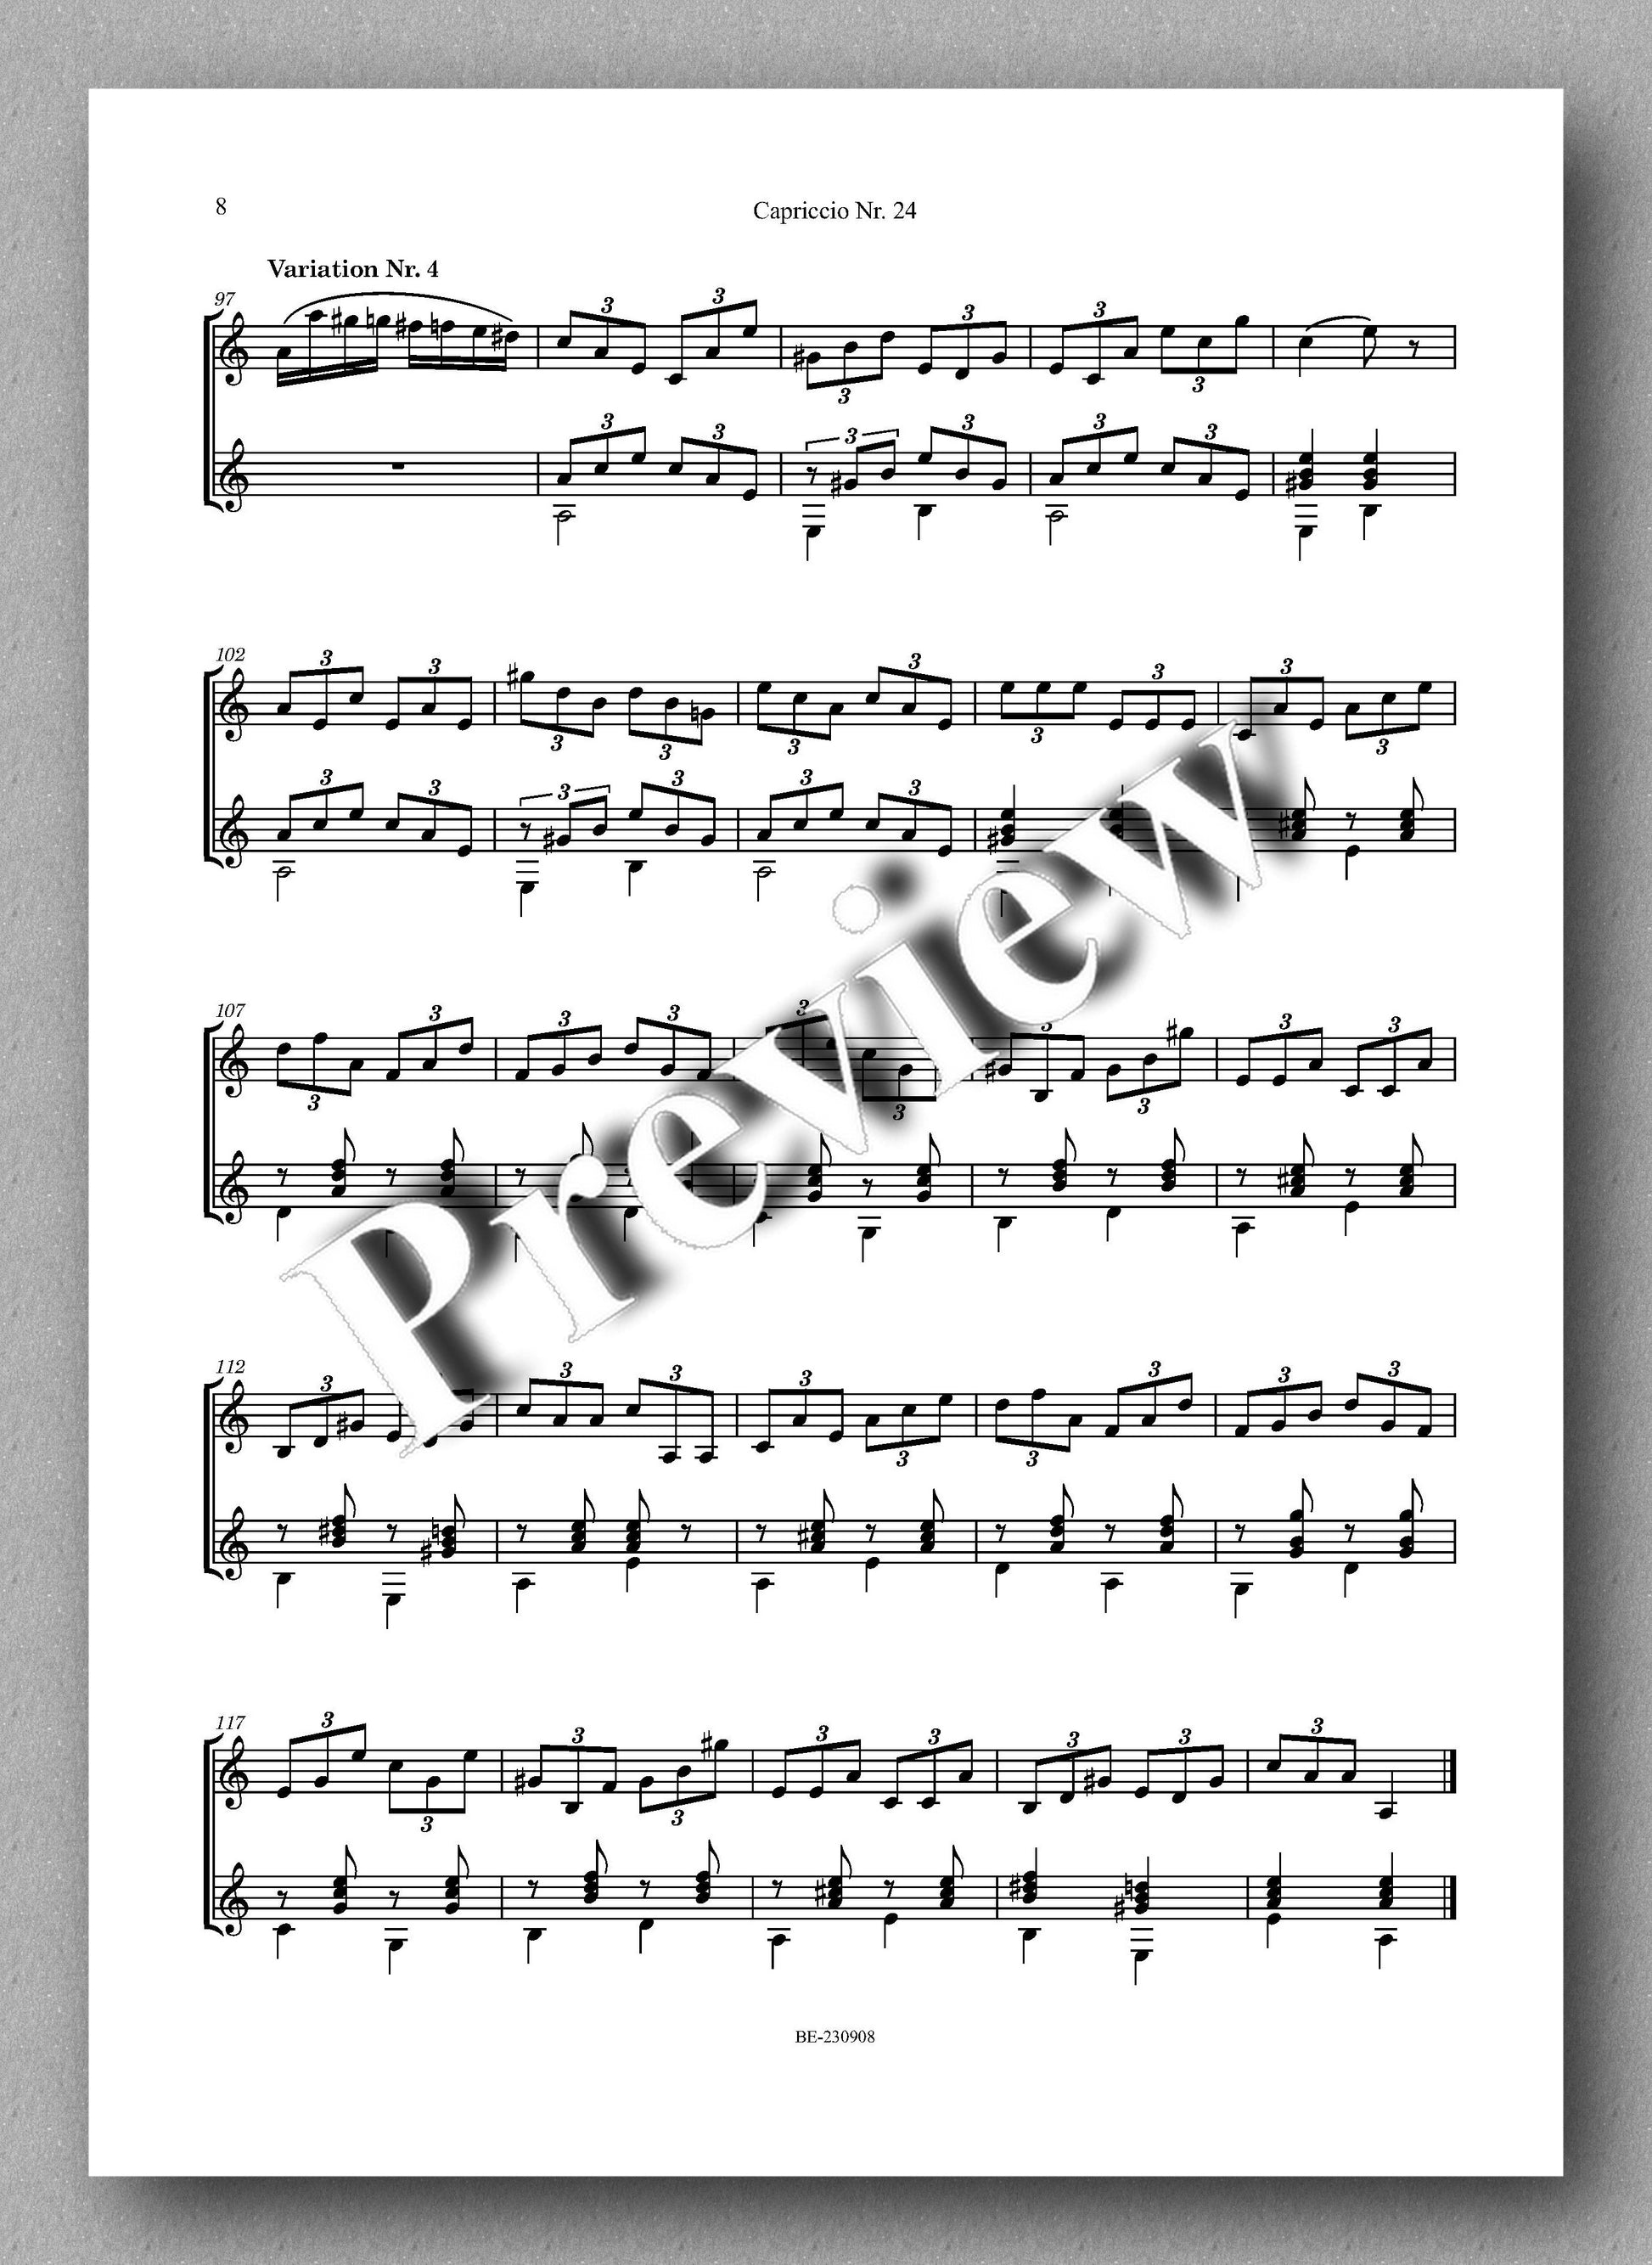 Nicolo Paganini, Capriccio Nr. 24 - preview of the music score 2